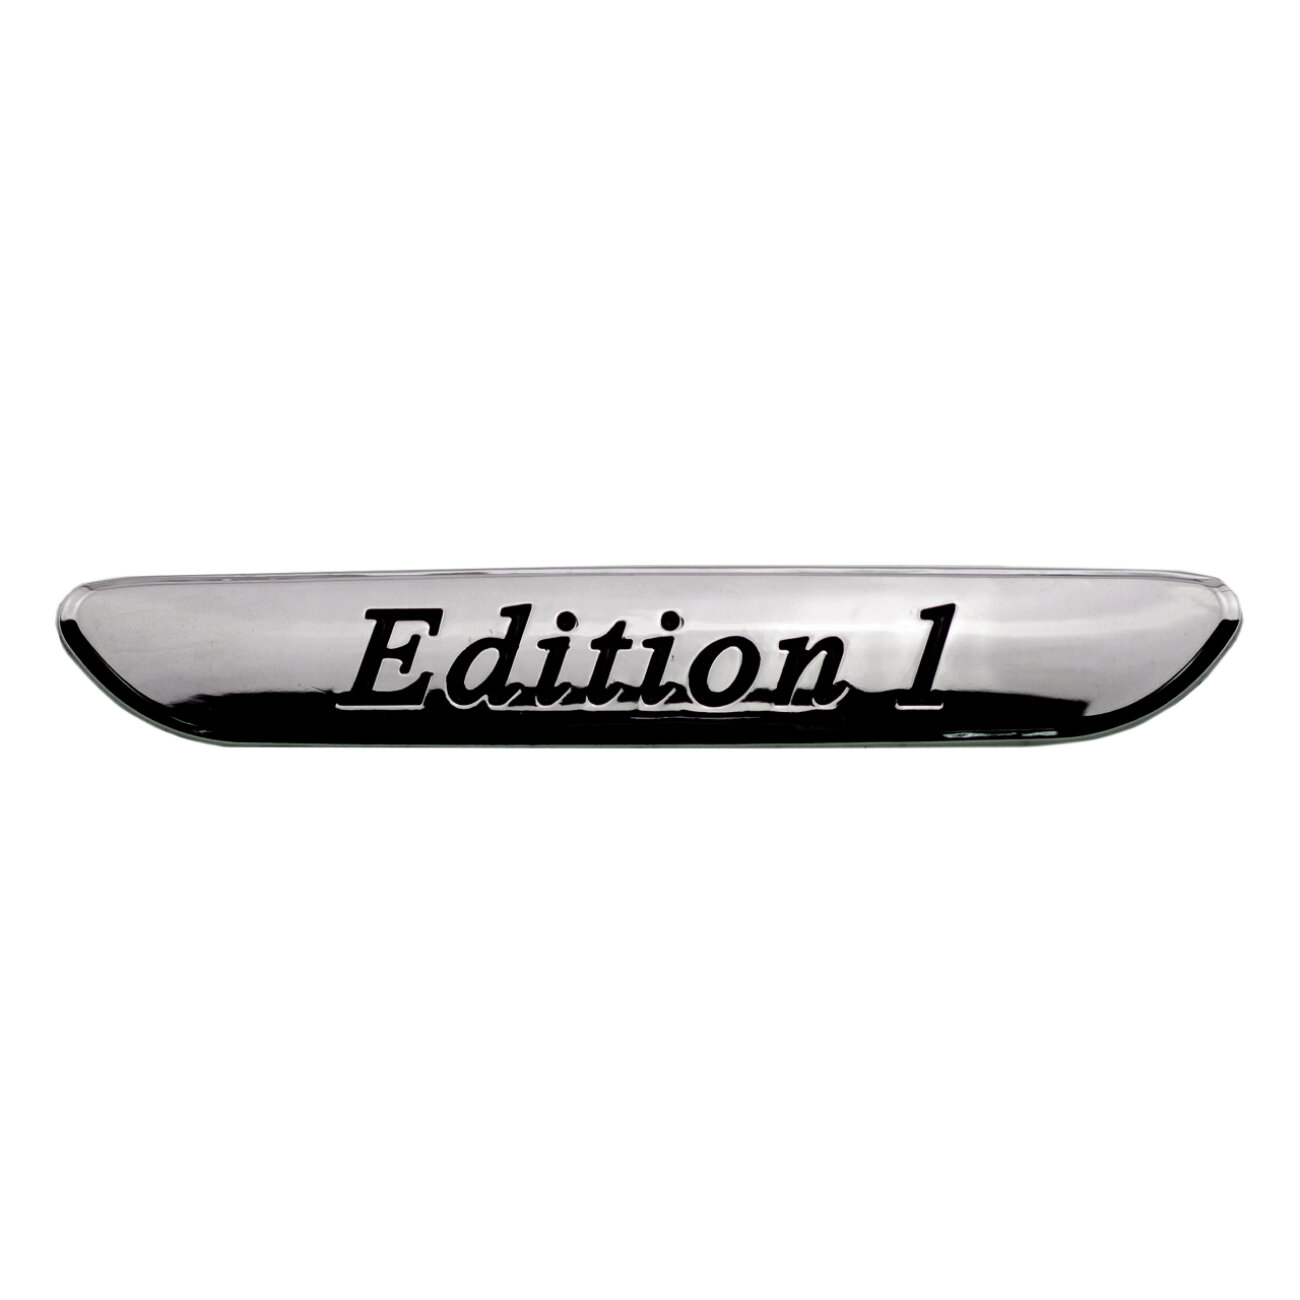 Эмблема на крыло для Mercedes-Benz Edition 1 хром